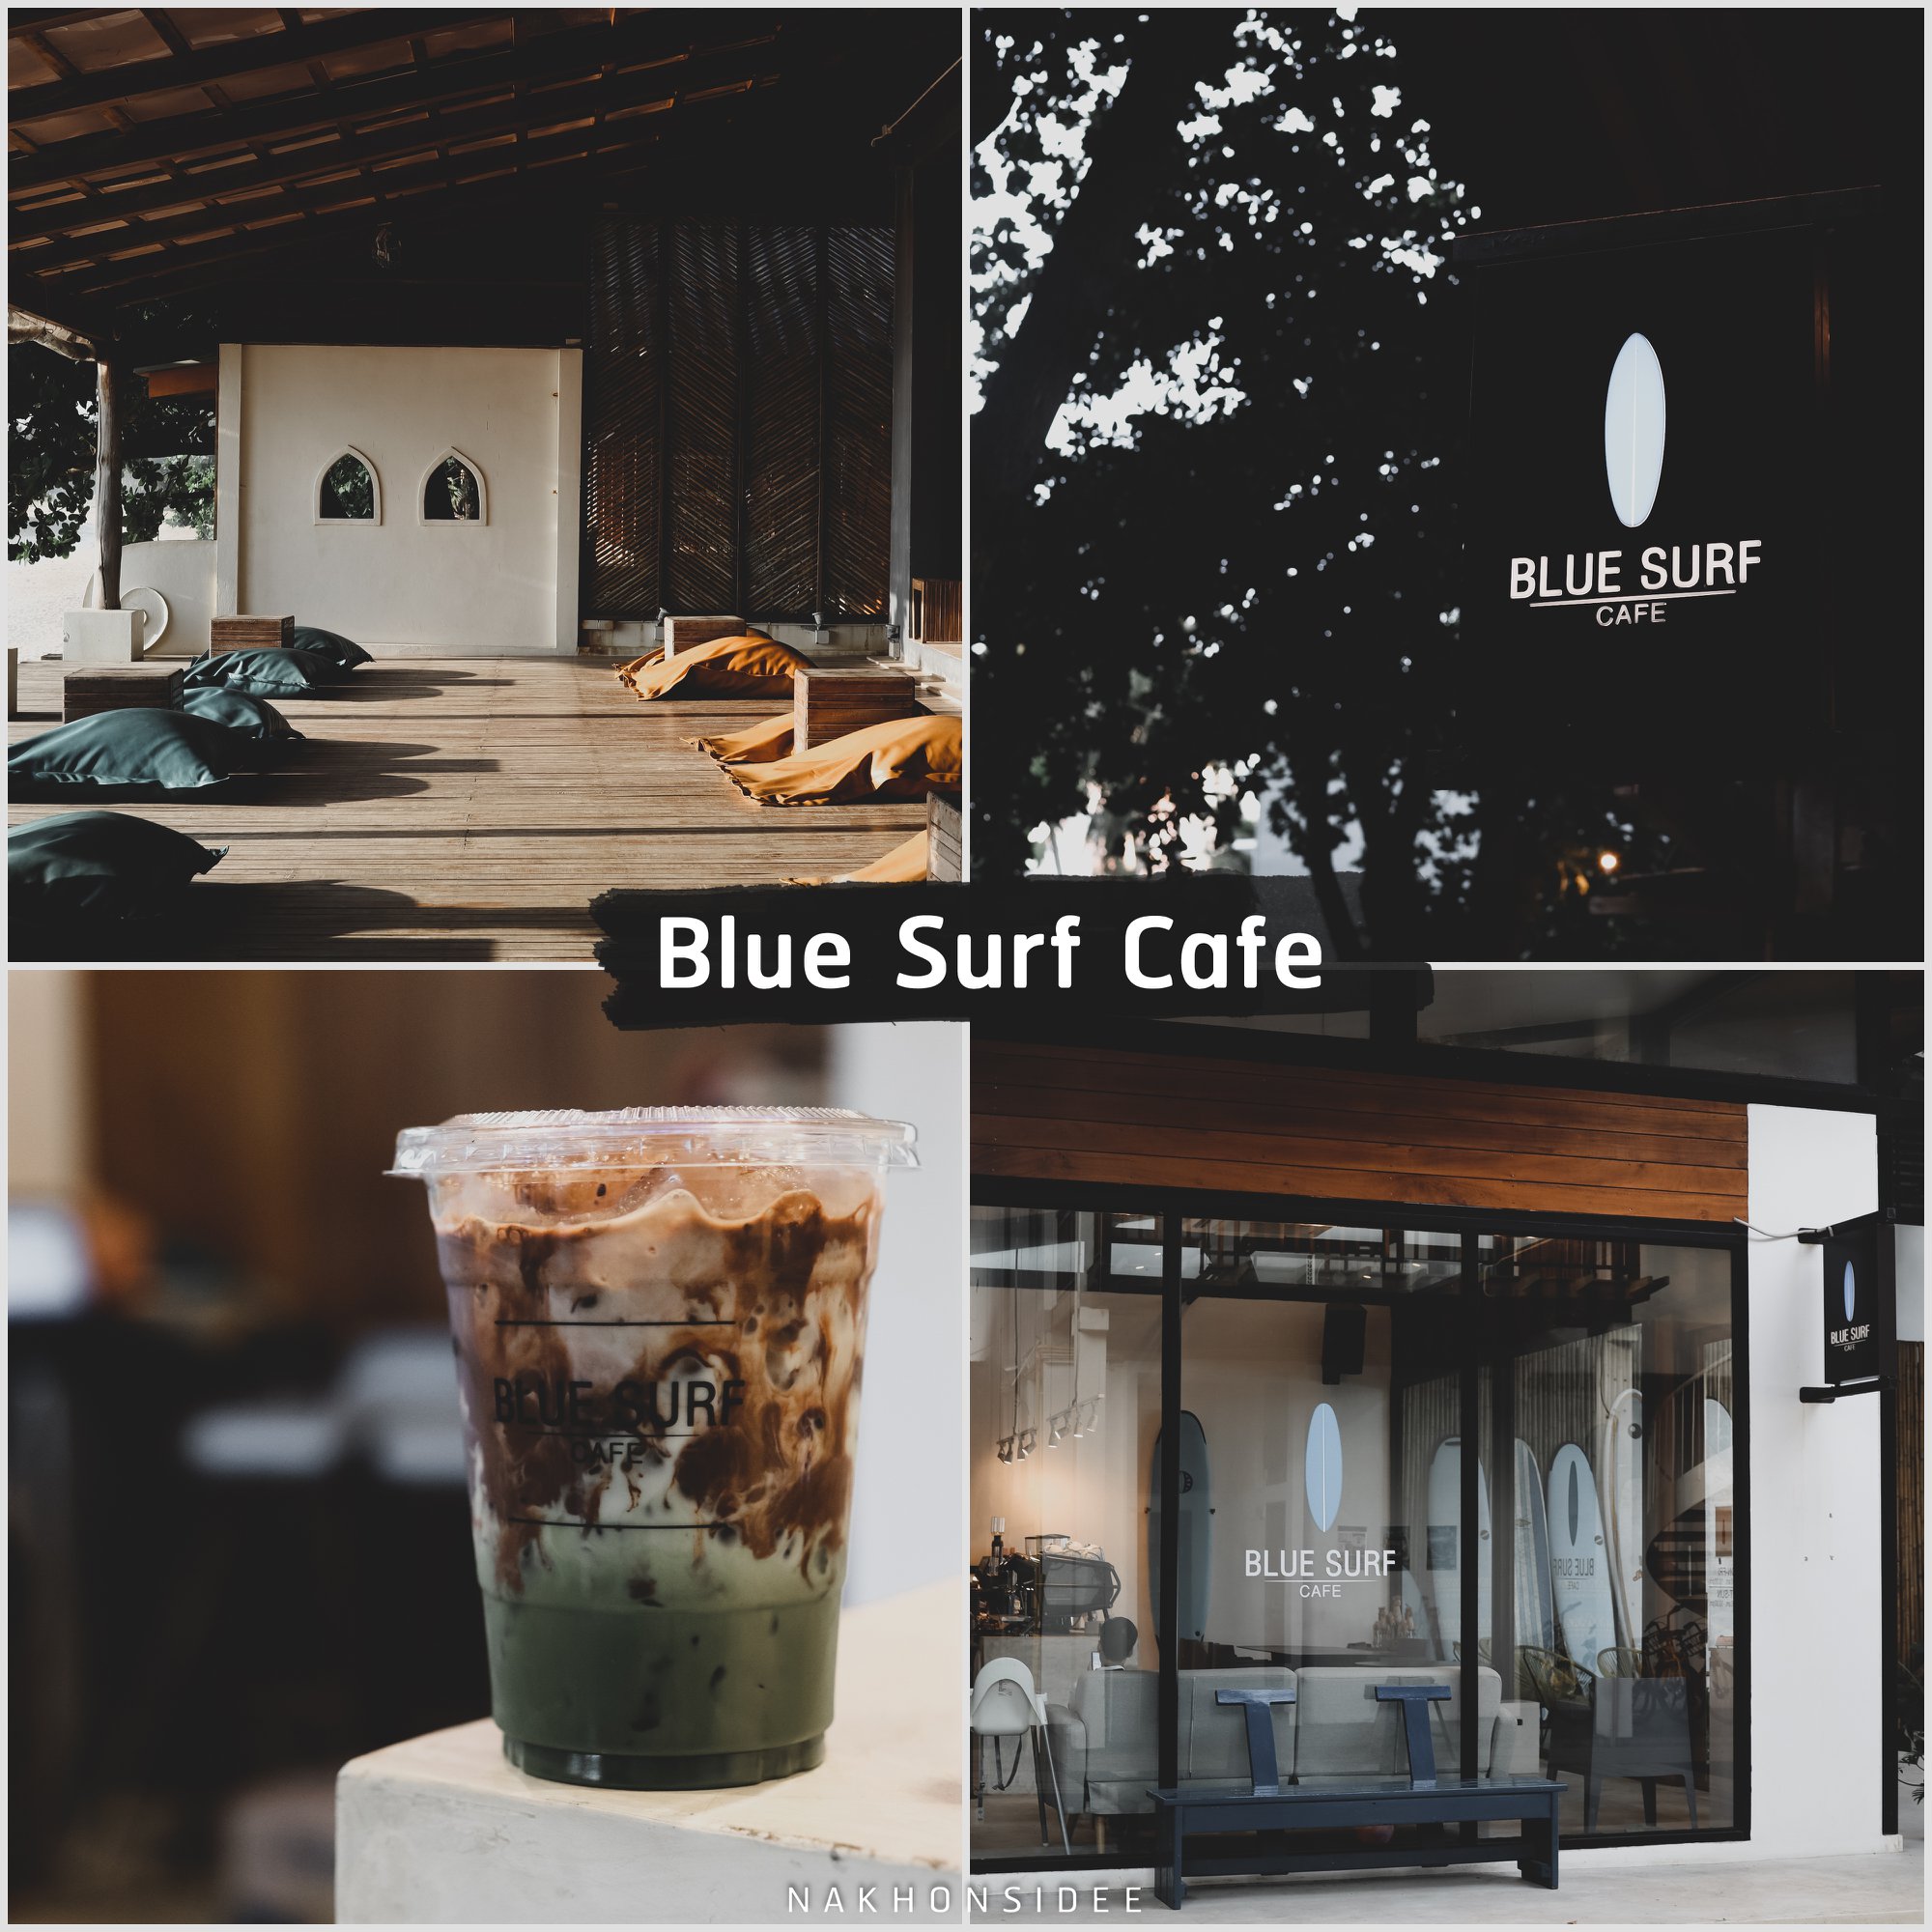  Blue-Surf-Cafe

คลิกที่นี่ คาเฟ่สวย,วิวหลักล้าน,นครศรีธรรมราช,รวมcafe,คาเฟ่,ร้านอาหาร,ร้านกาแฟ,ภูเขา